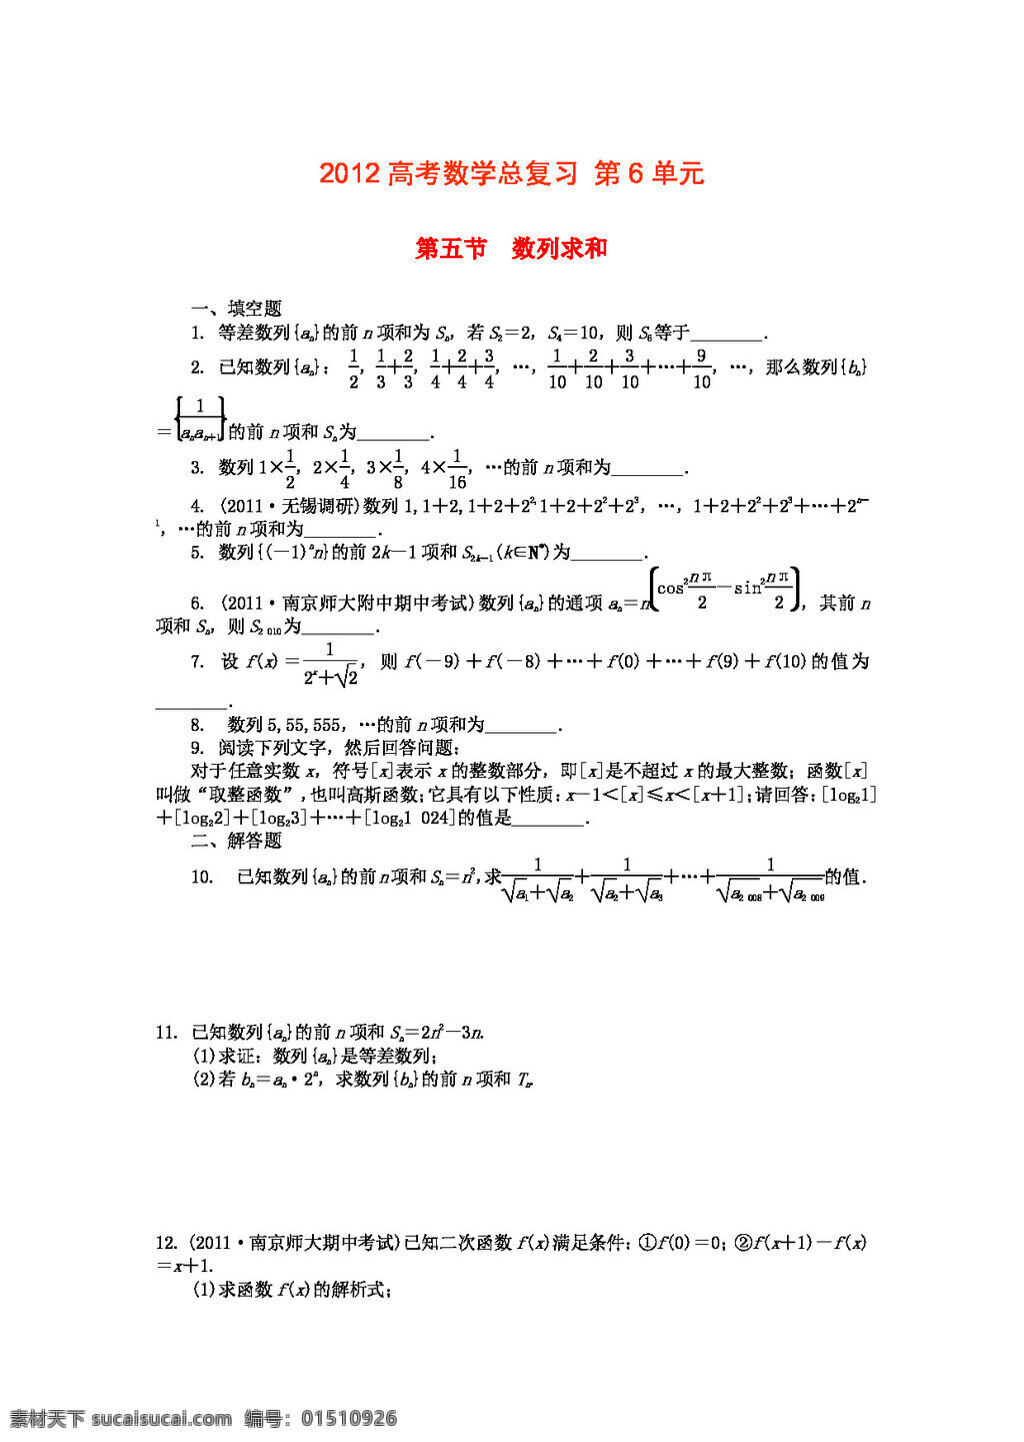 数学 苏 教 版 2012 高考 总 复习 第6单元 第5节 数列求和 文 高考专区 试卷 苏教版